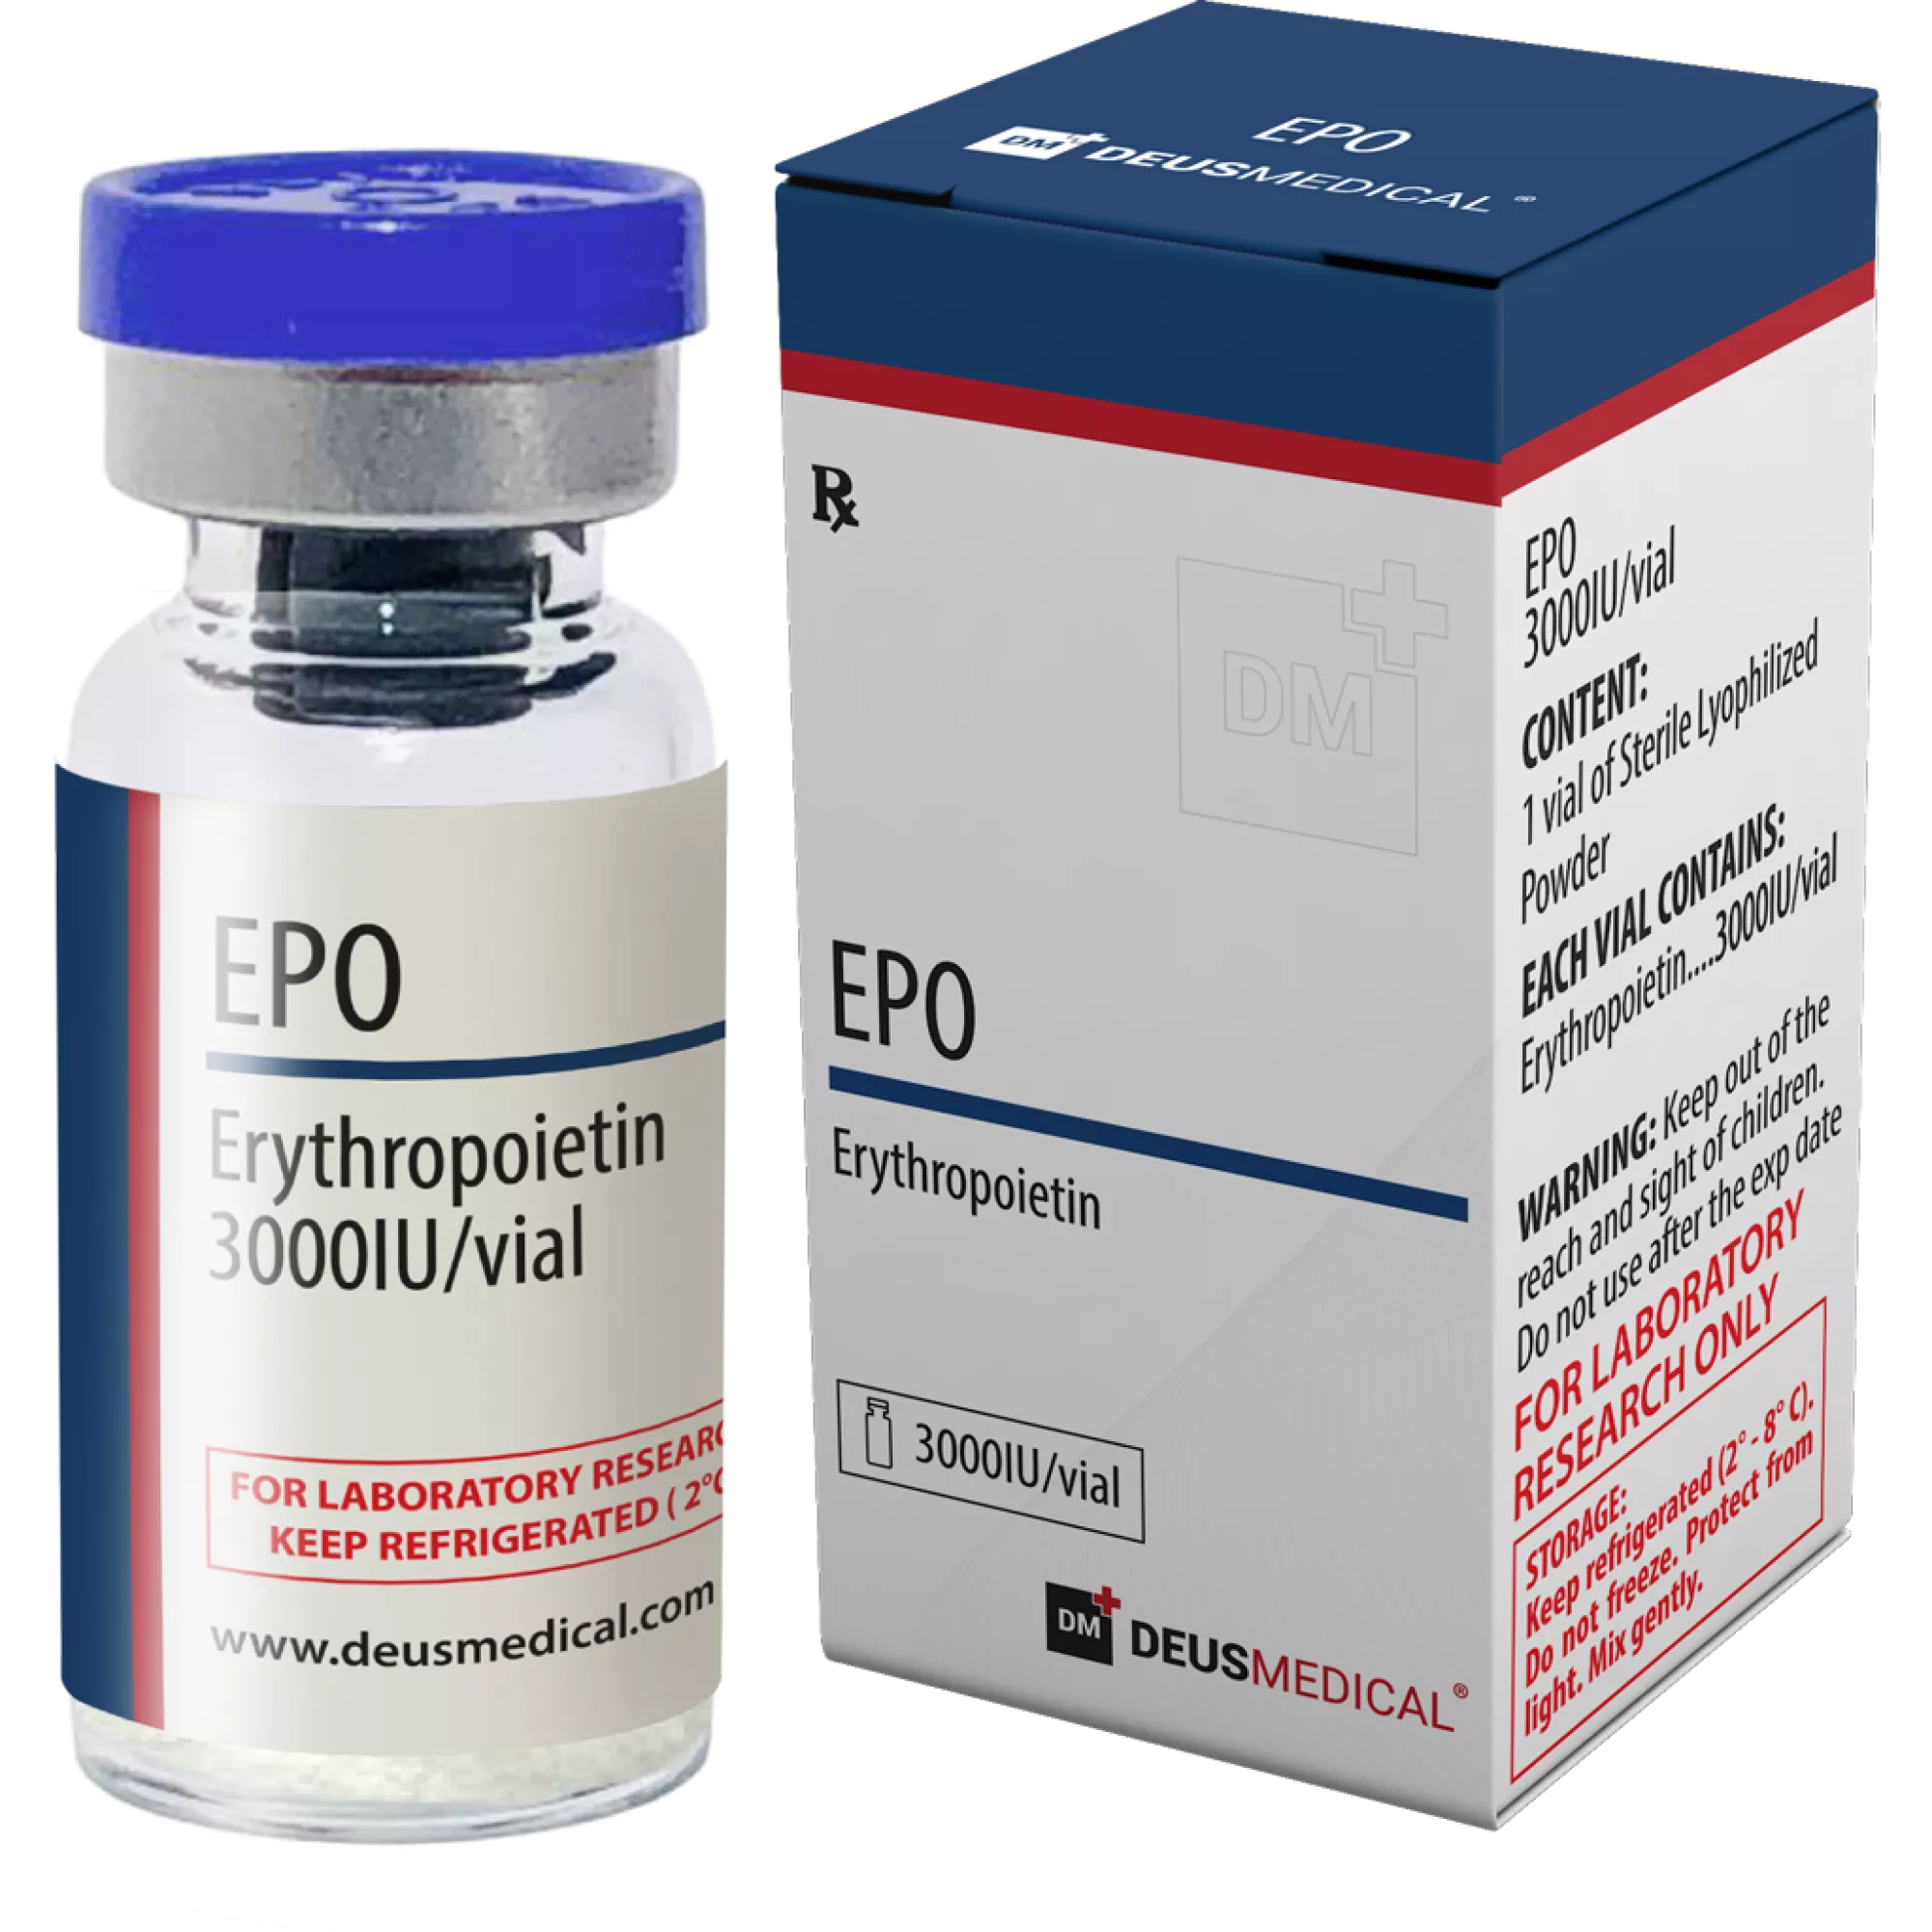 EPO (Erythropoietin), Deus Medical, Kaufen Sie Steroide Online - www.deuspower.shop